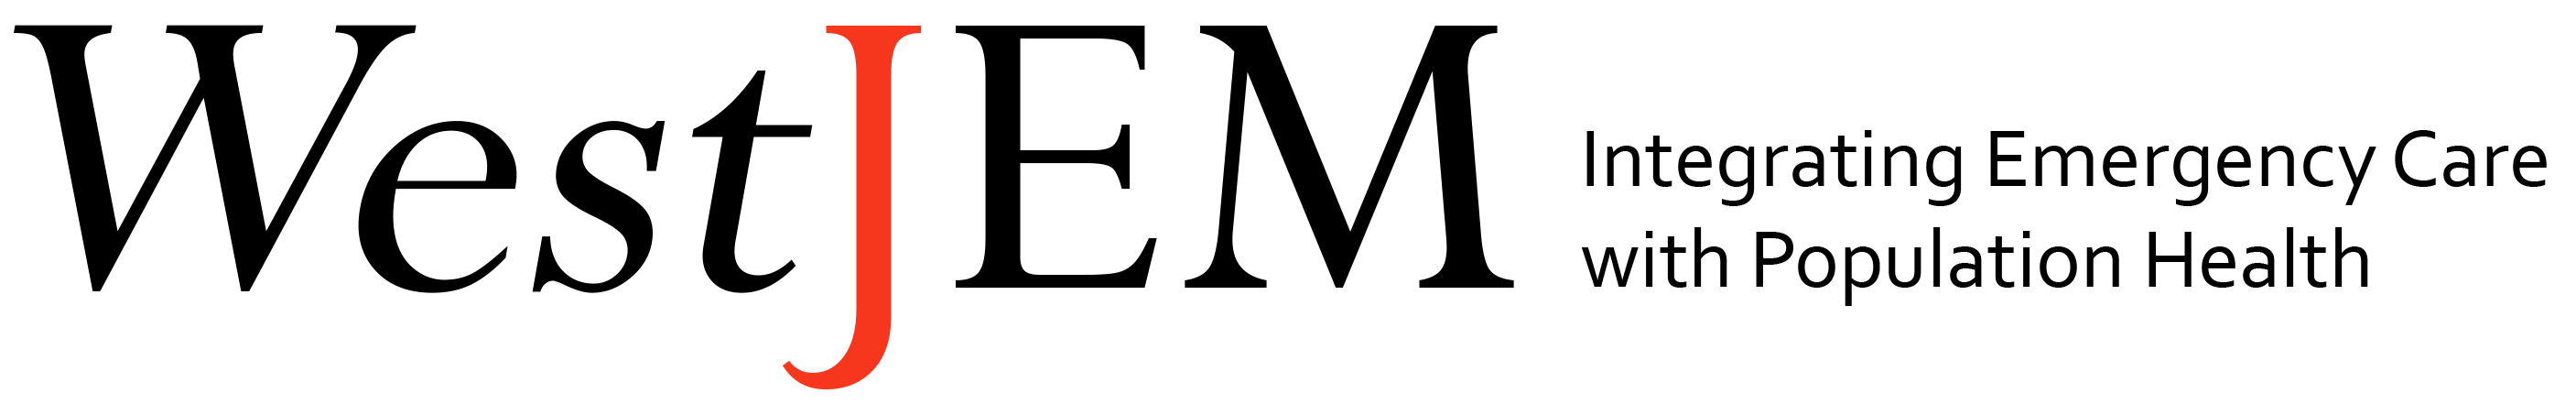 WestJEM-transparent-Logo_FINAL